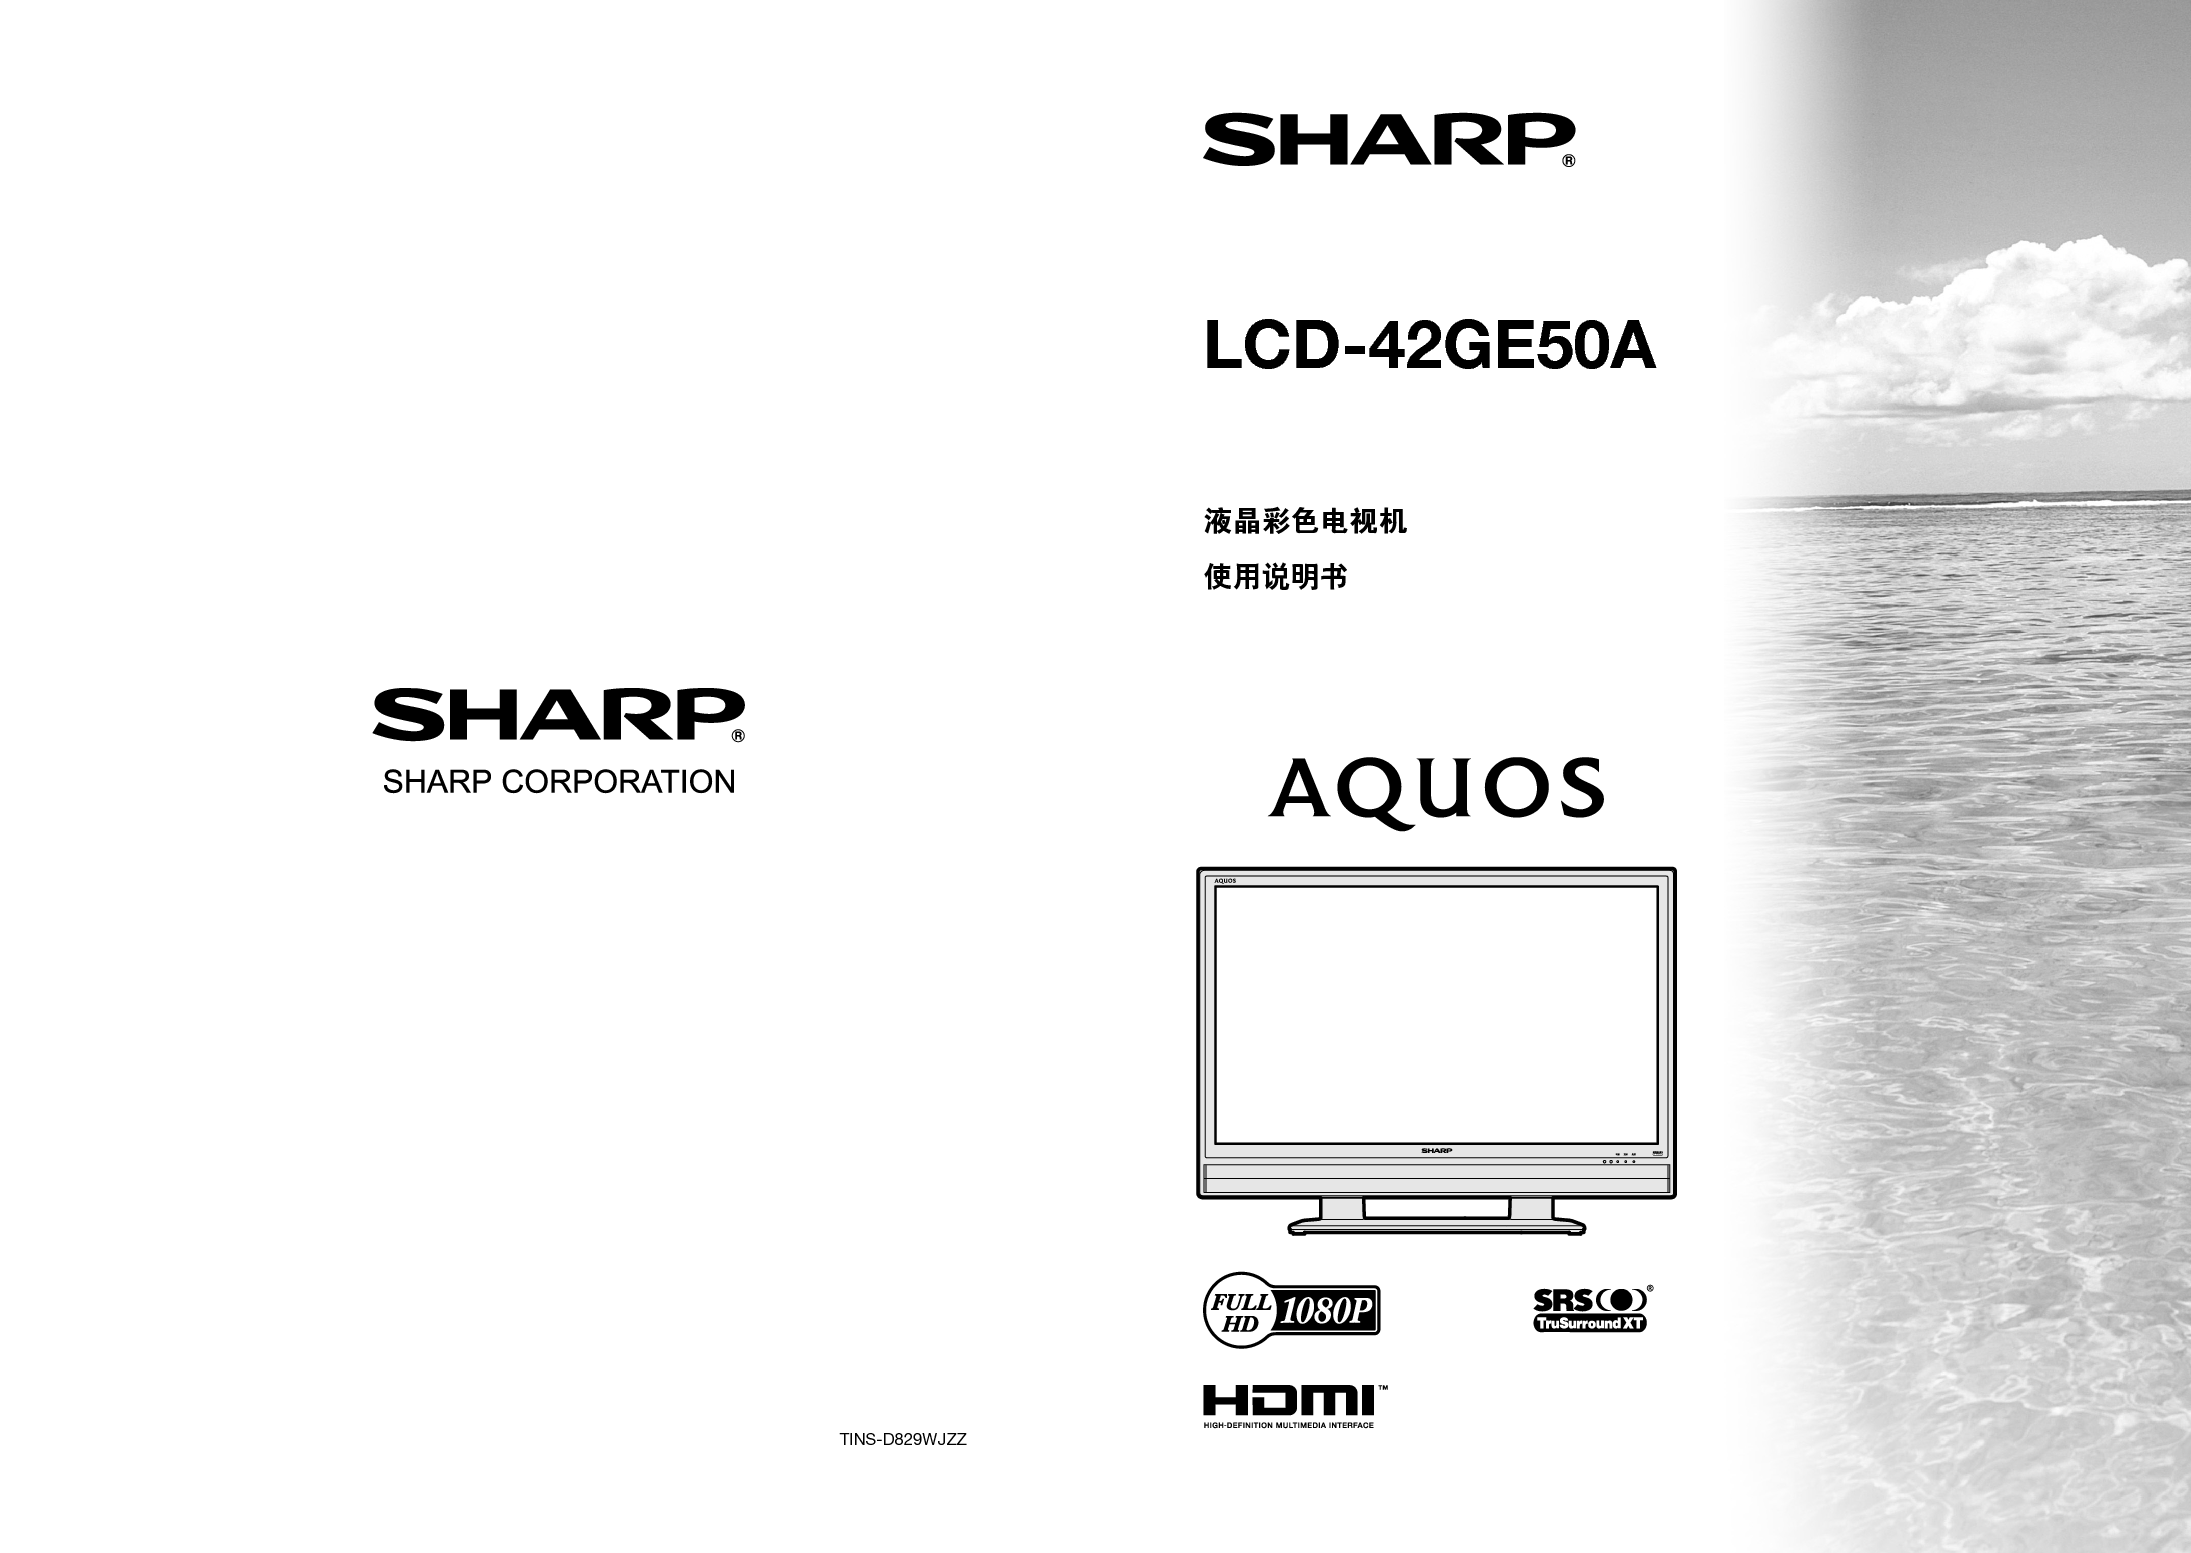 夏普 Sharp LCD-42GE50A 说明书 封面